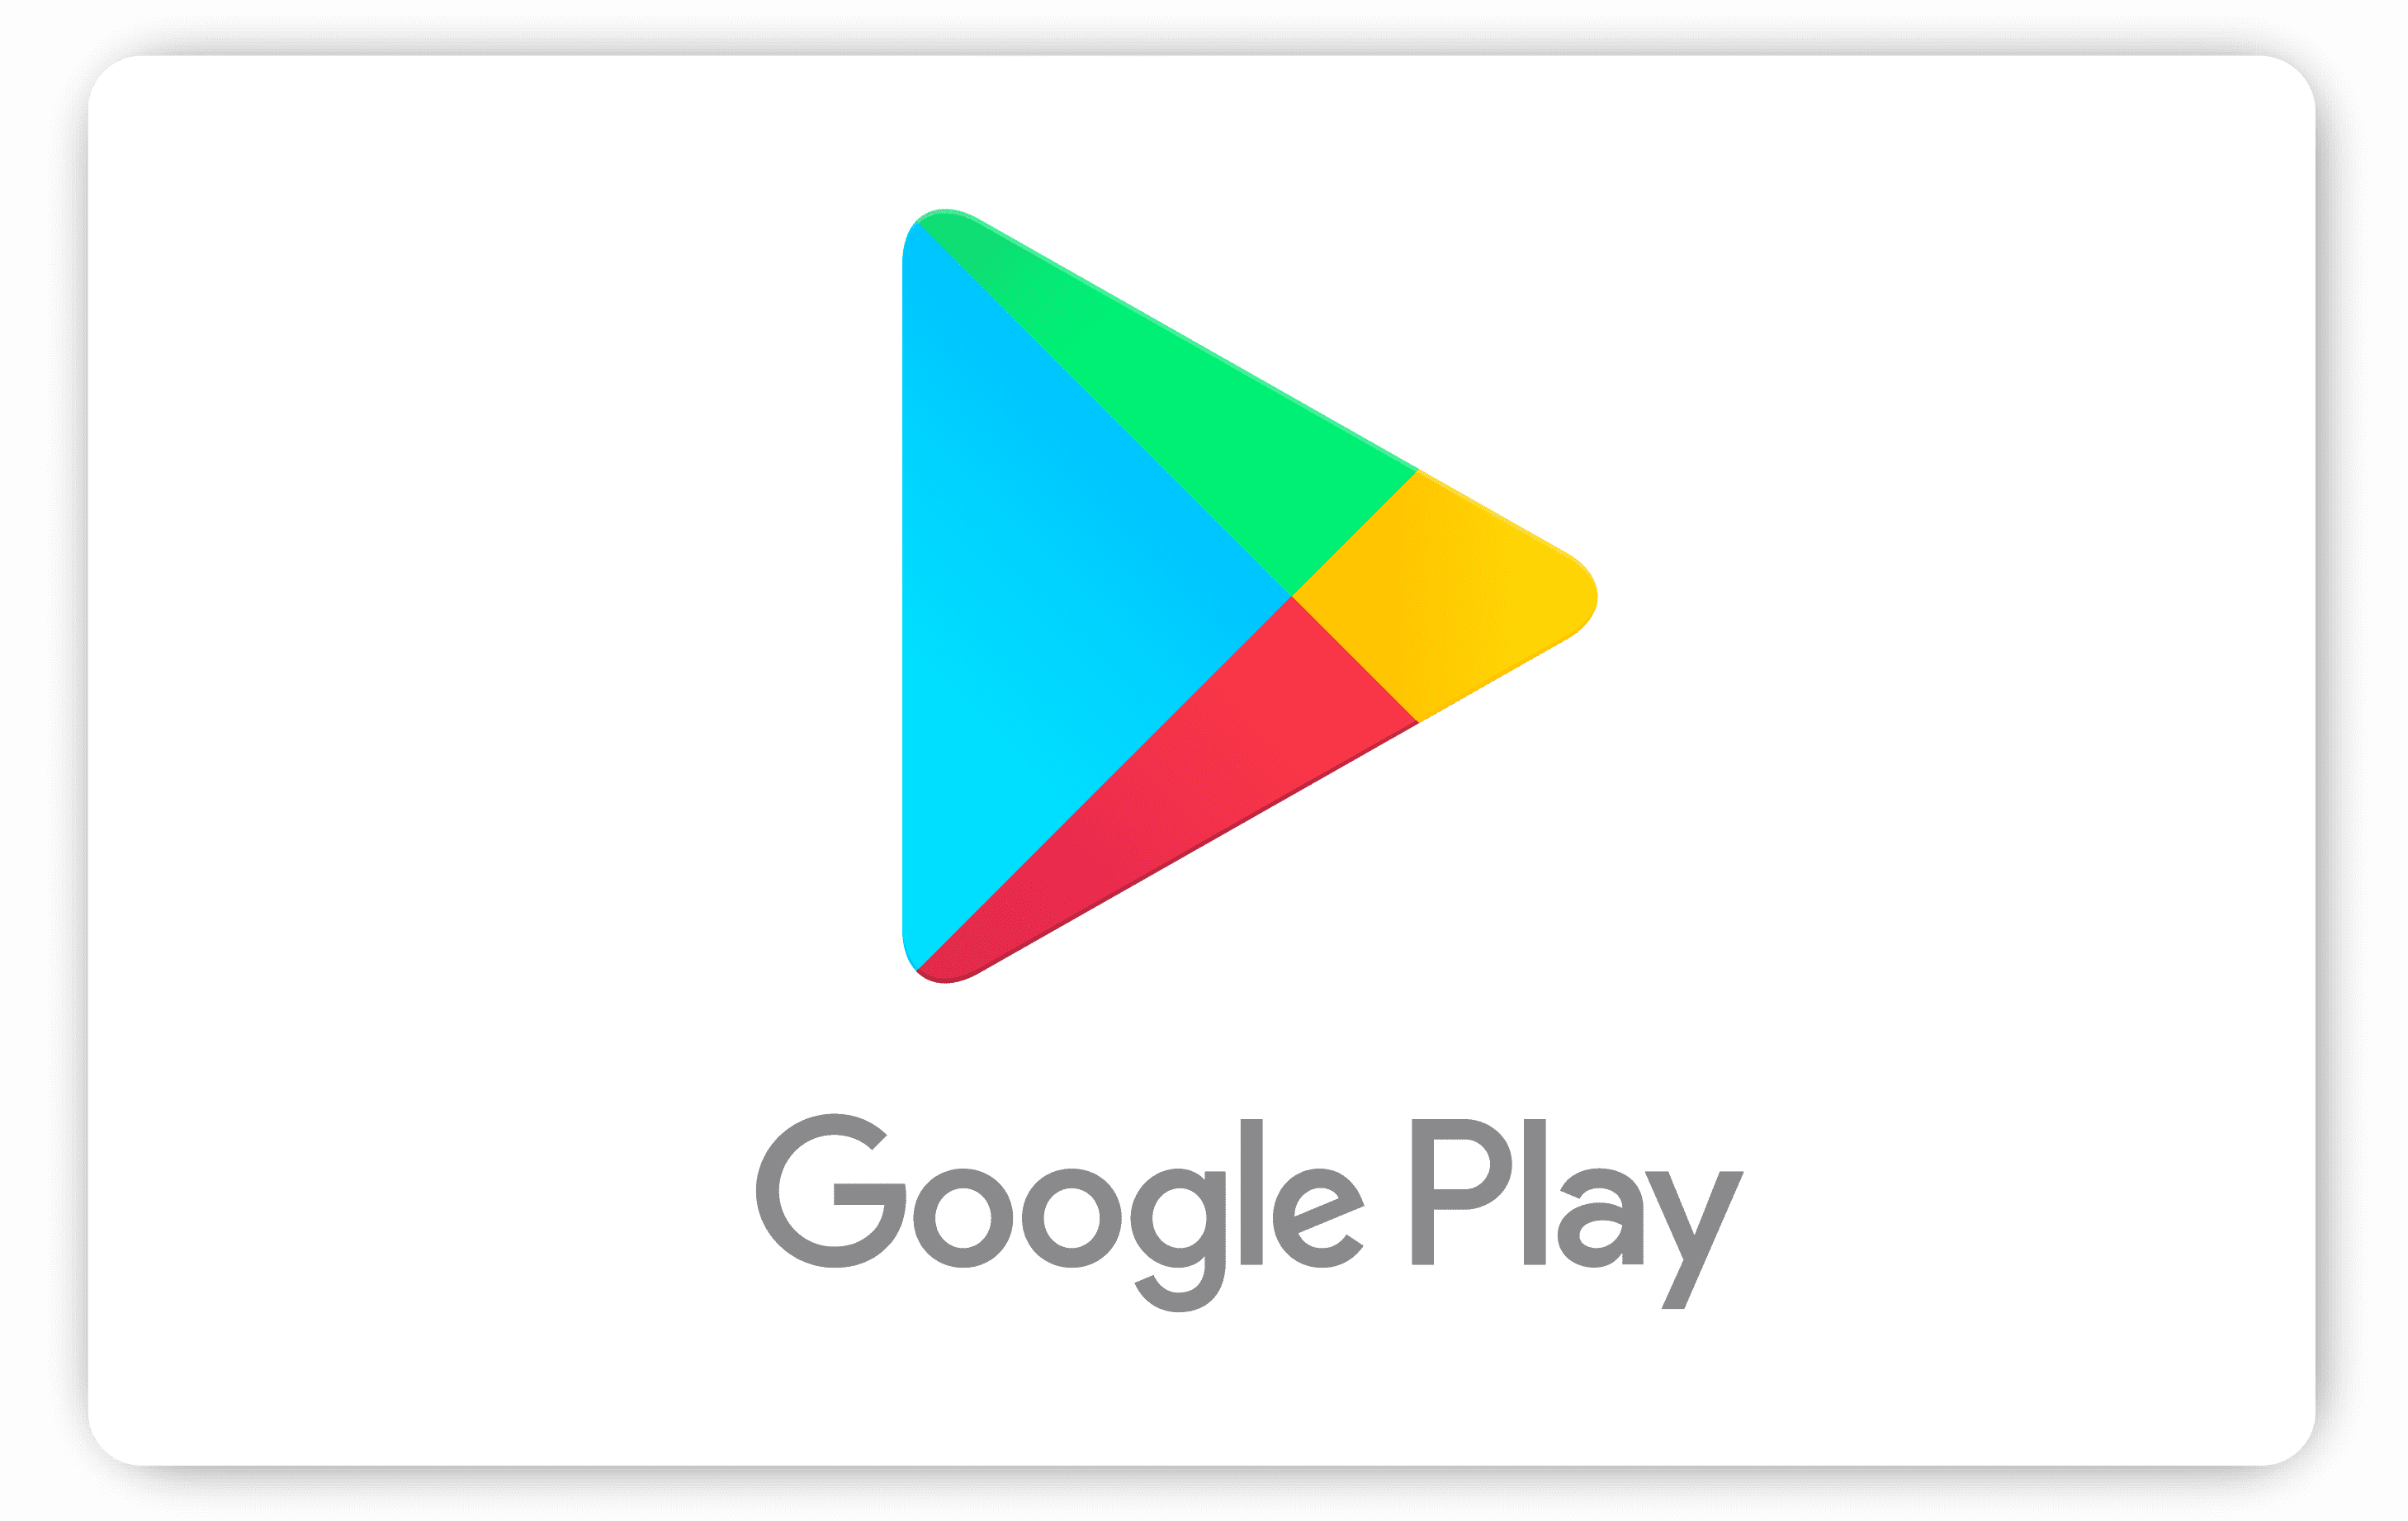 Google Play hediye kodu 500 TL